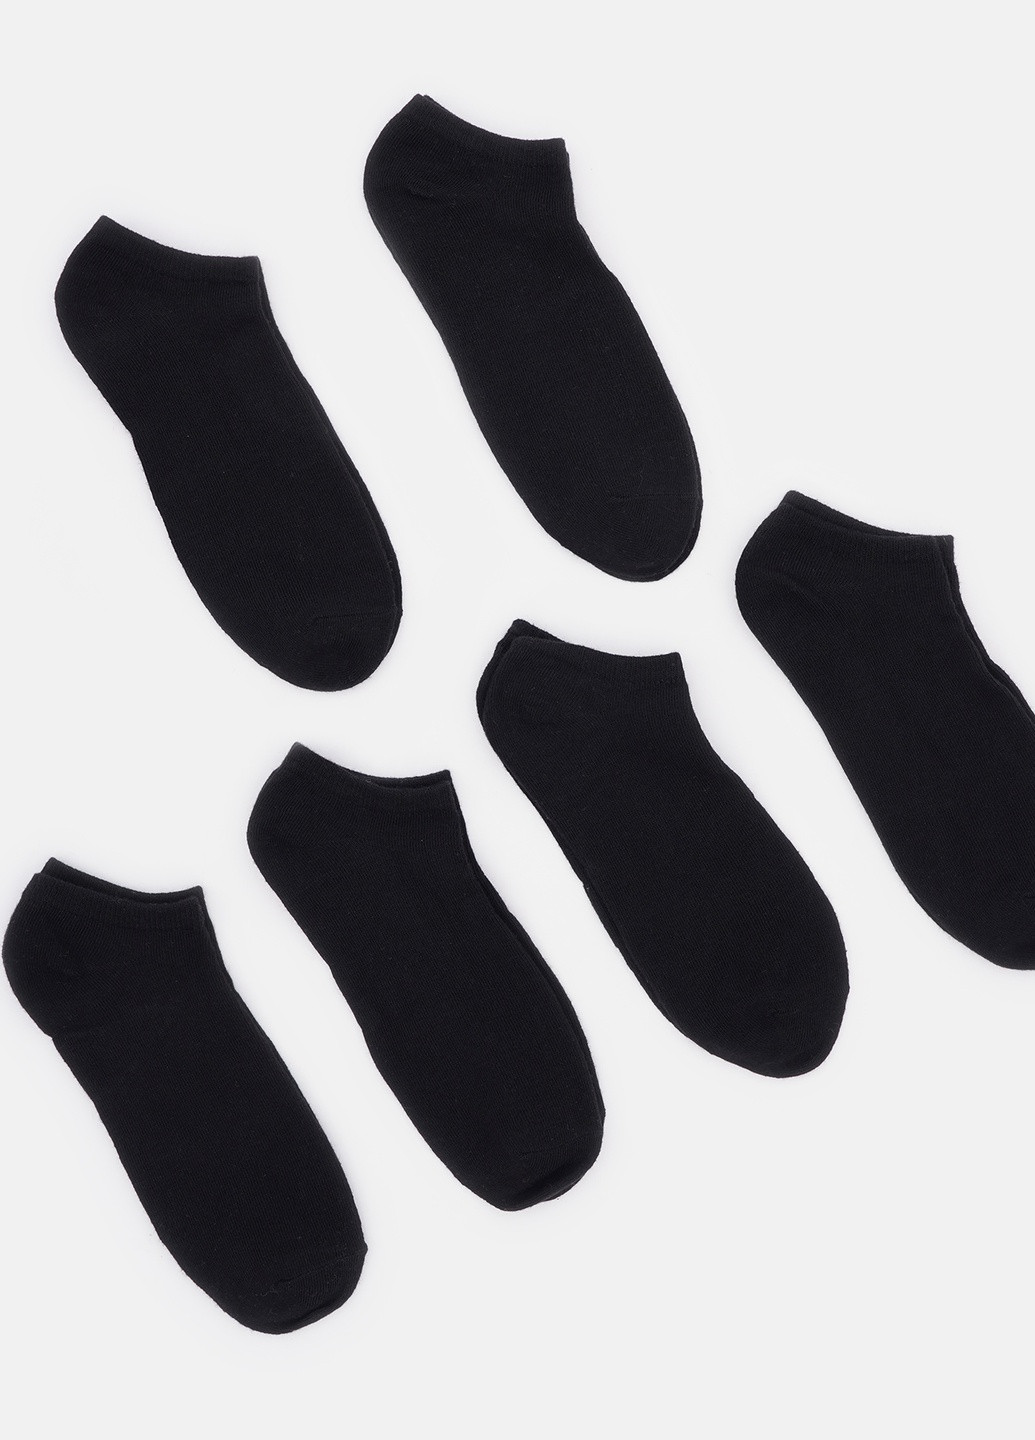 Носки (6 пар) C&A однотонные чёрные повседневные